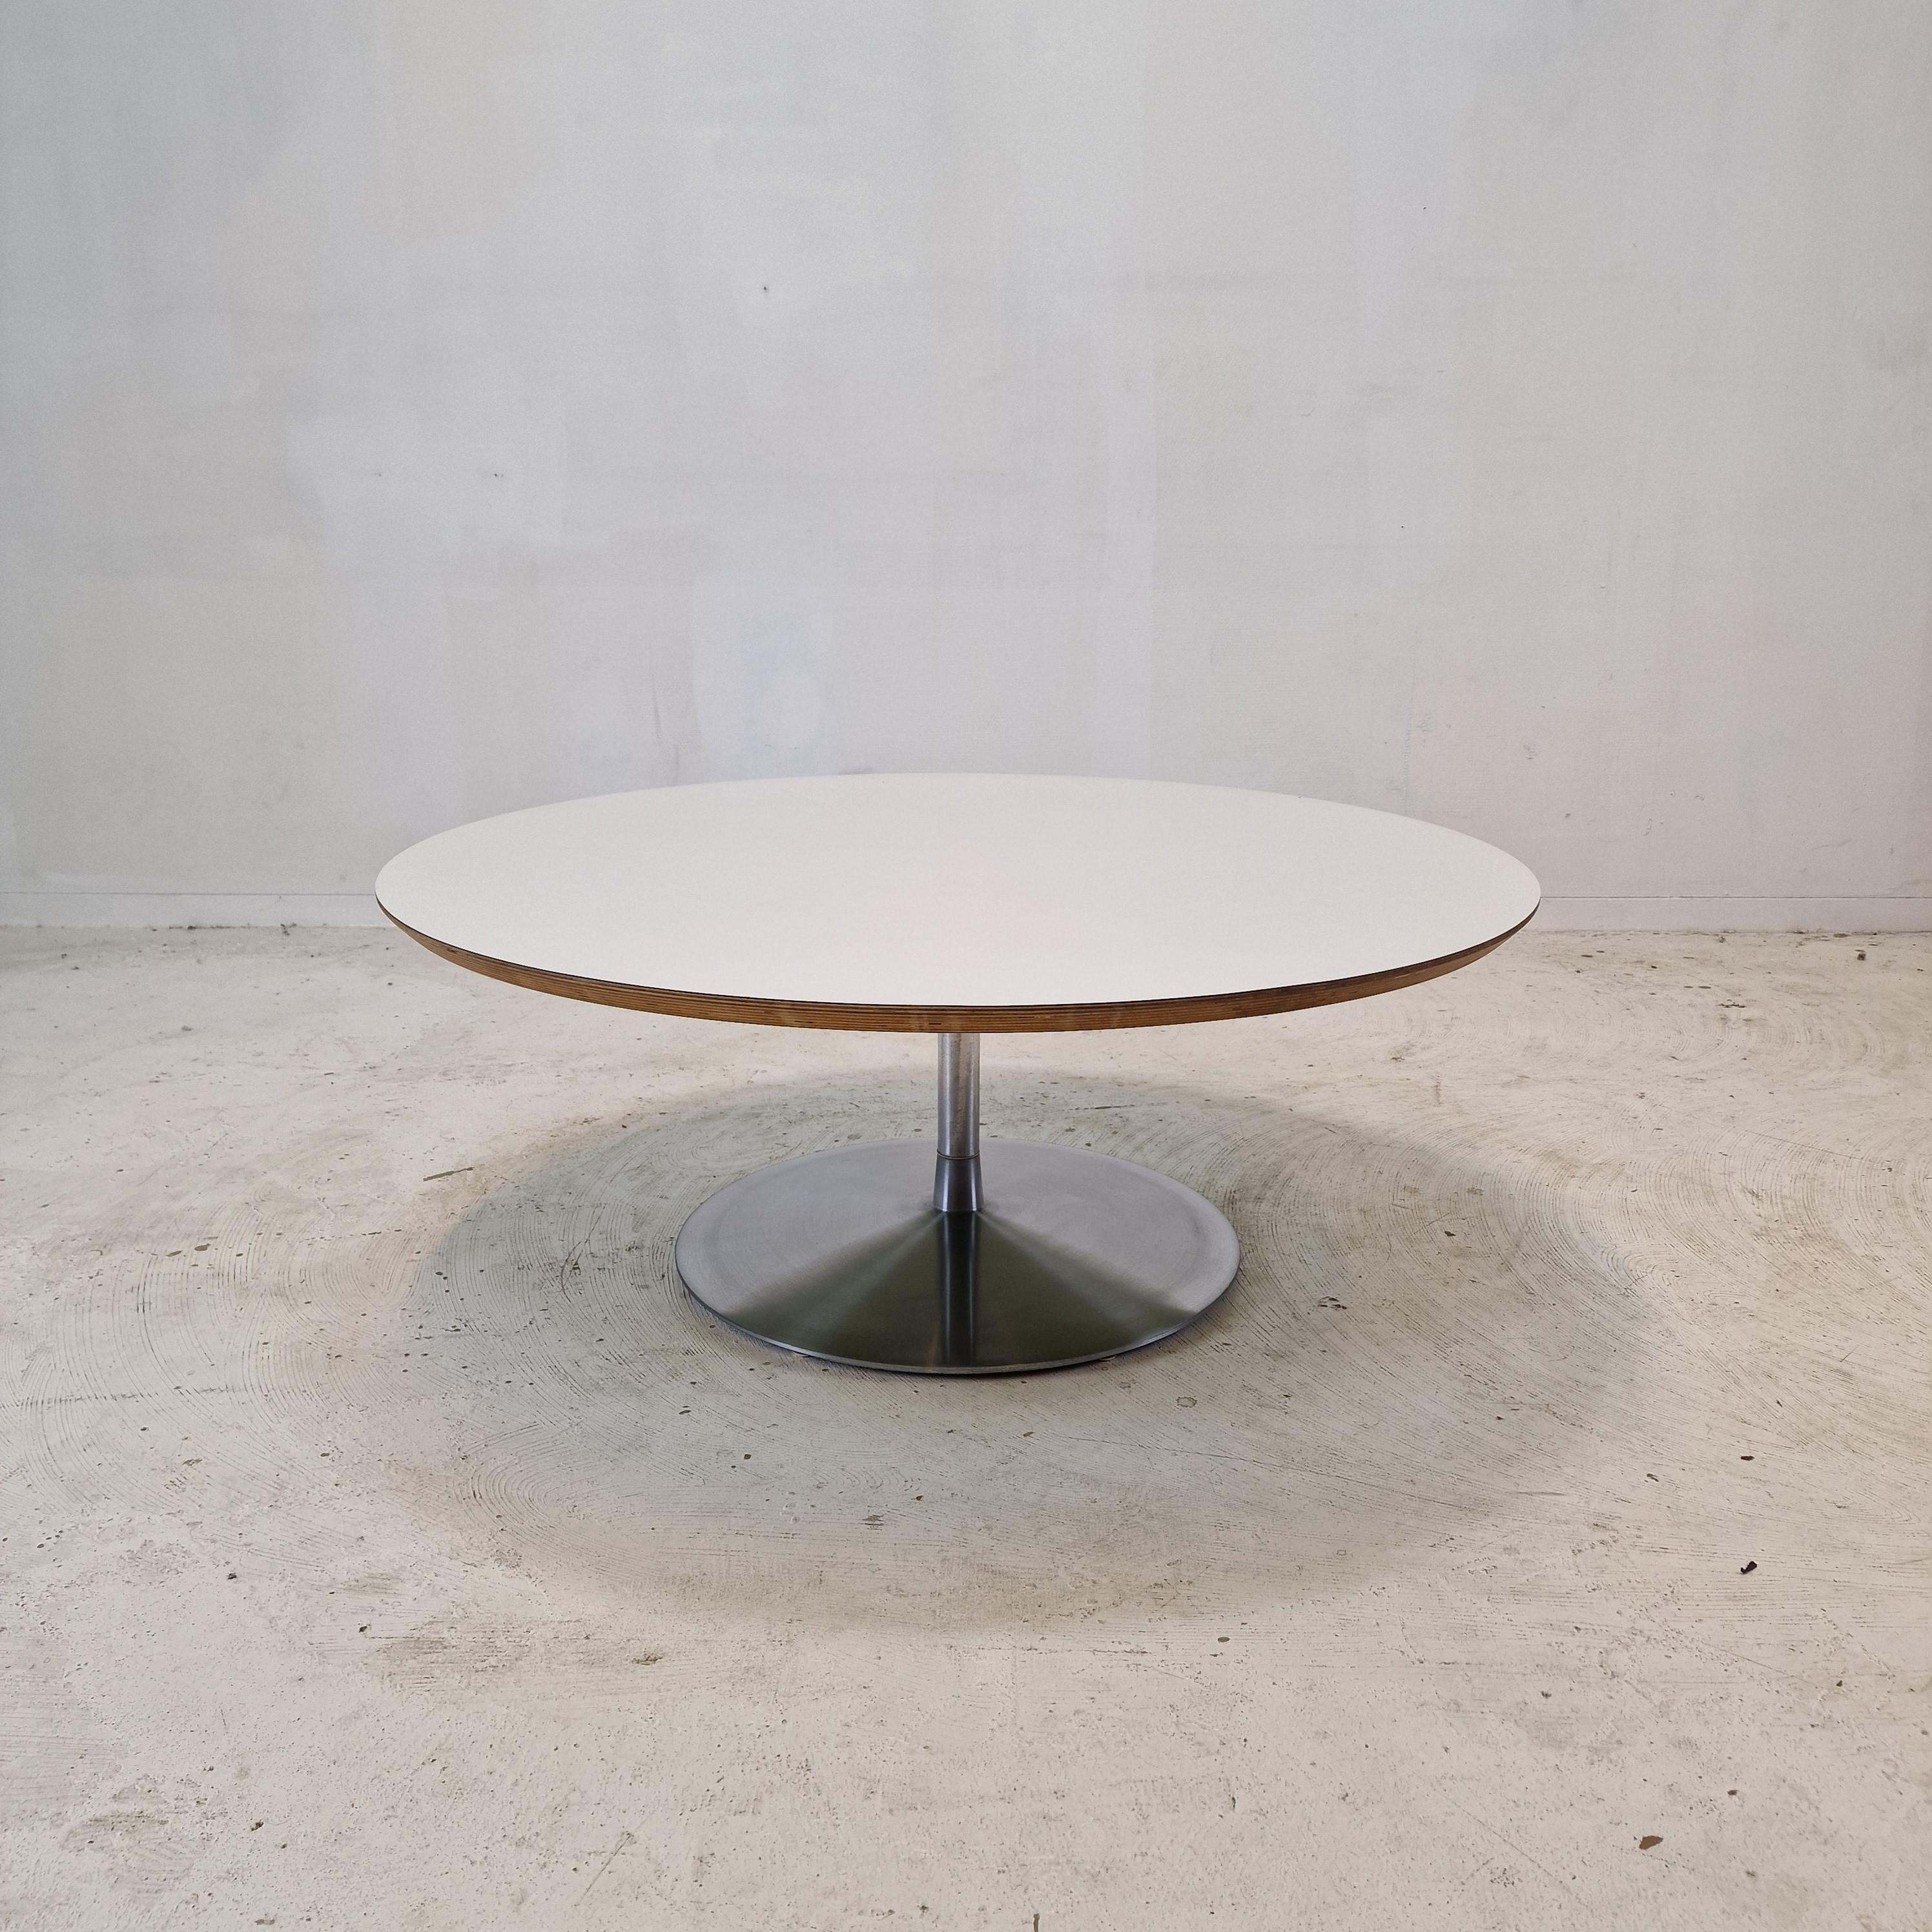 Très belle table basse ronde, conçue par Pierre Paulin dans les années 1960. 
Cette table particulière a été fabriquée à la fin des années 60.

Le nom de la table est 